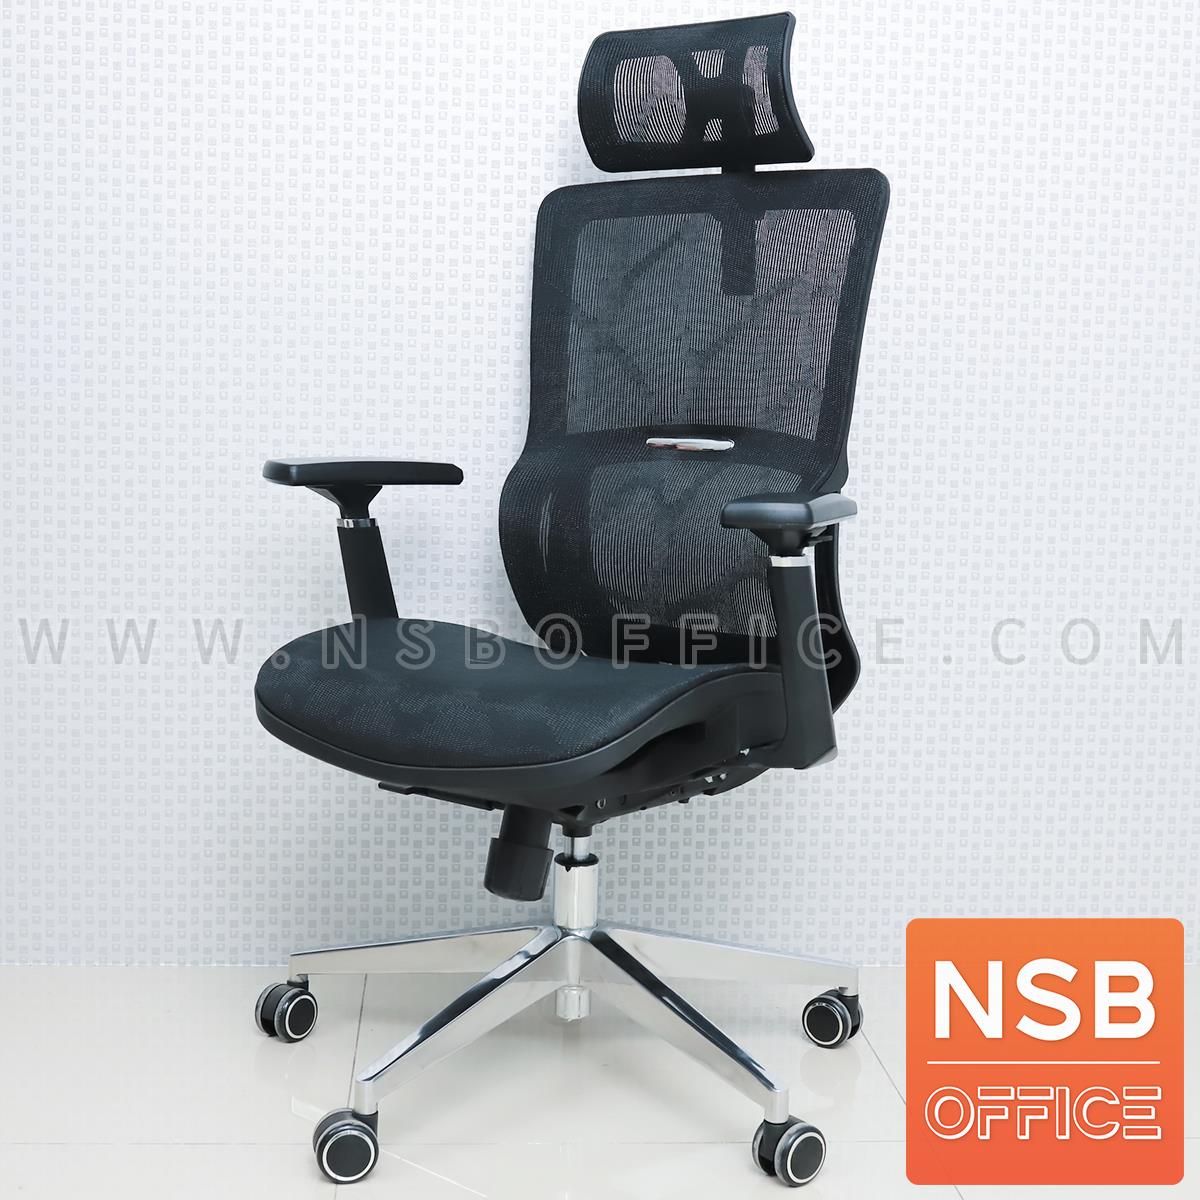 B28A135:เก้าอี้สำนักงานหลังเน็ต รุ่น Newhype (นิวไฮพ์)  ขาเหล็กชุบโครเมี่ยม